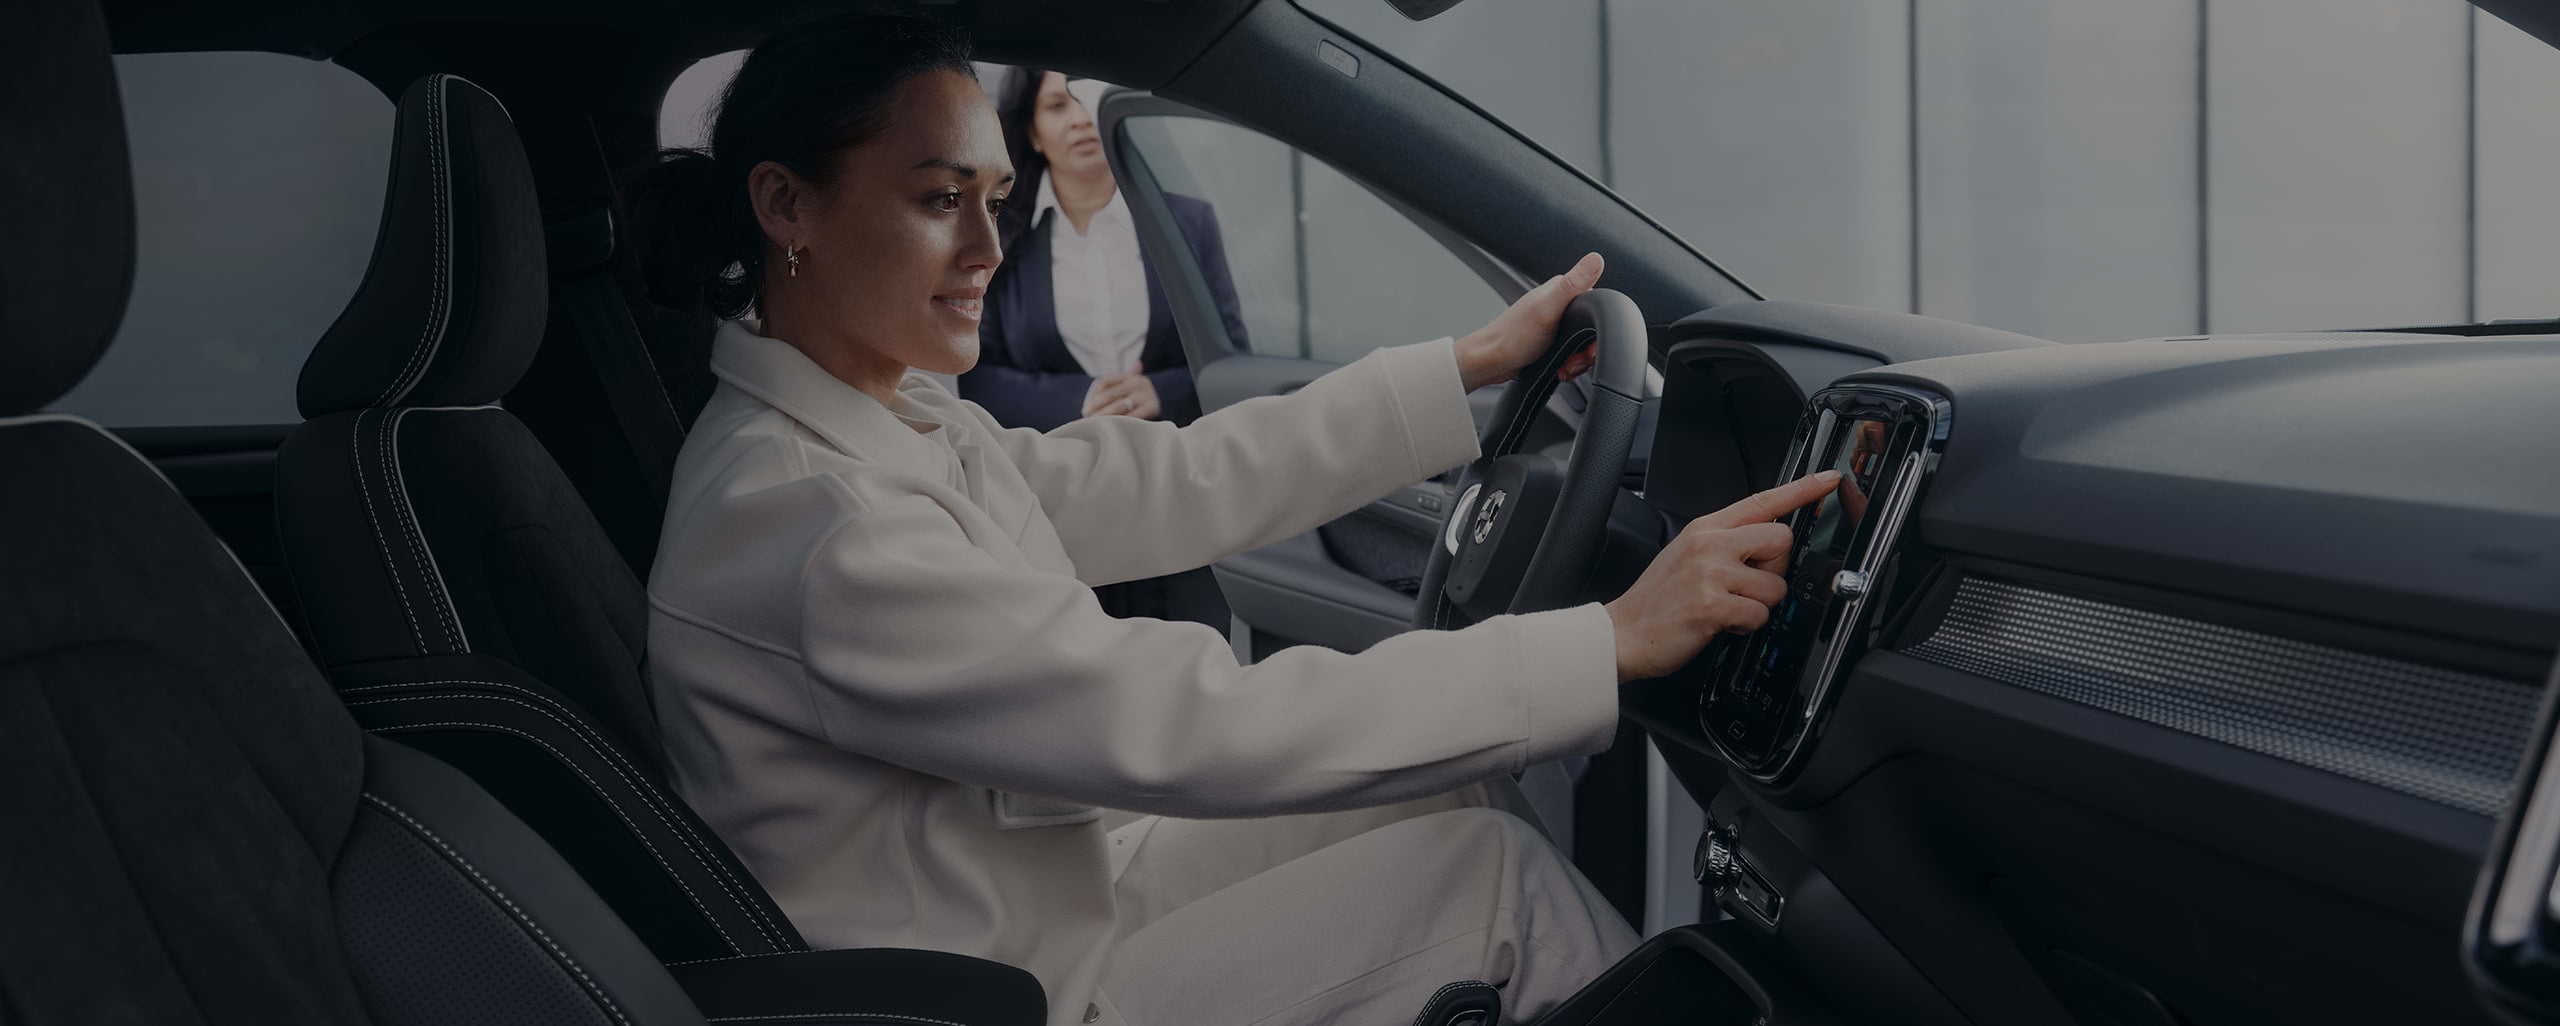 Egy értékesítő mellett egy fiatal nő ül mosolyogva a vezetőülésben, és megérinti a Volvo középkonzolját.